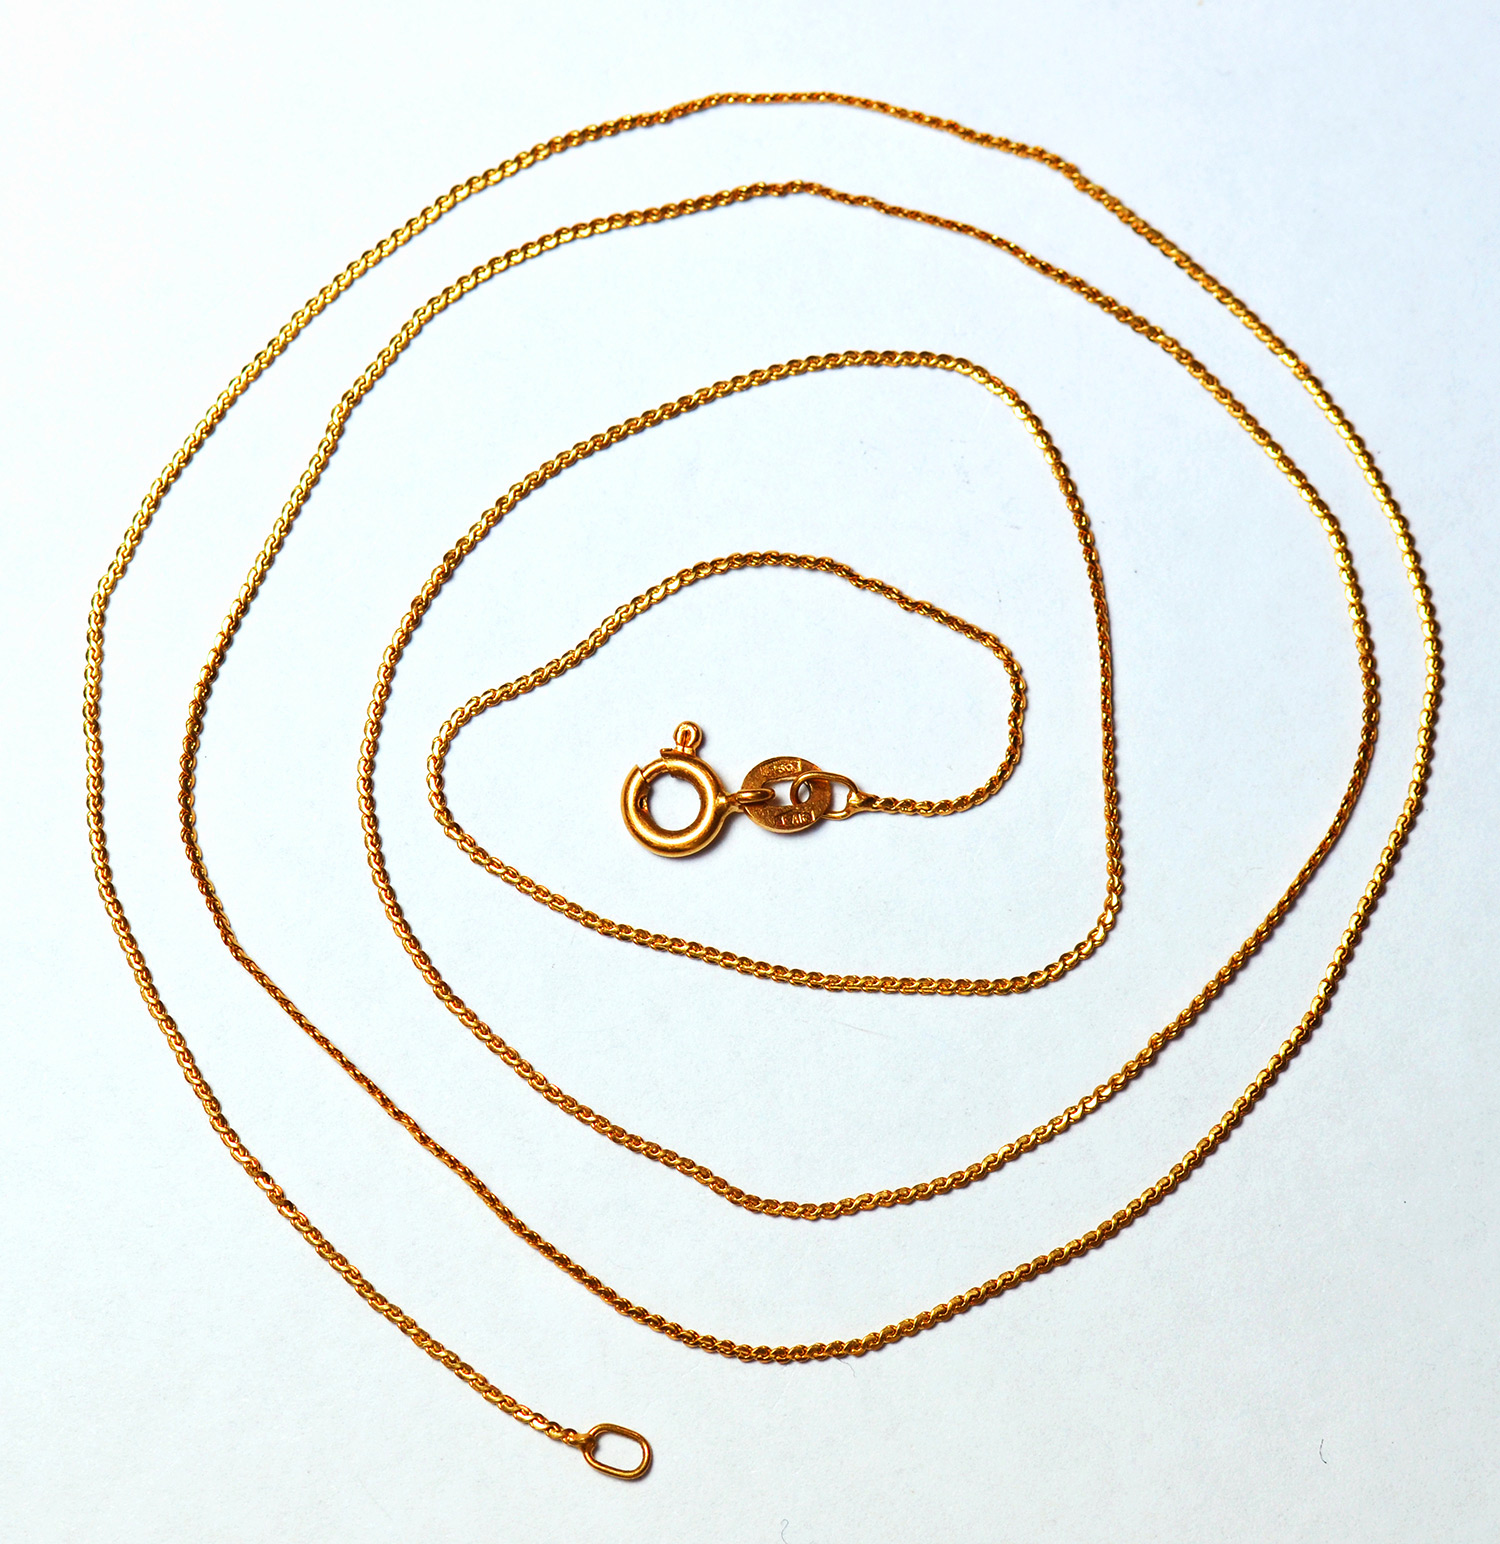 18ct Gold Serpentine Chain